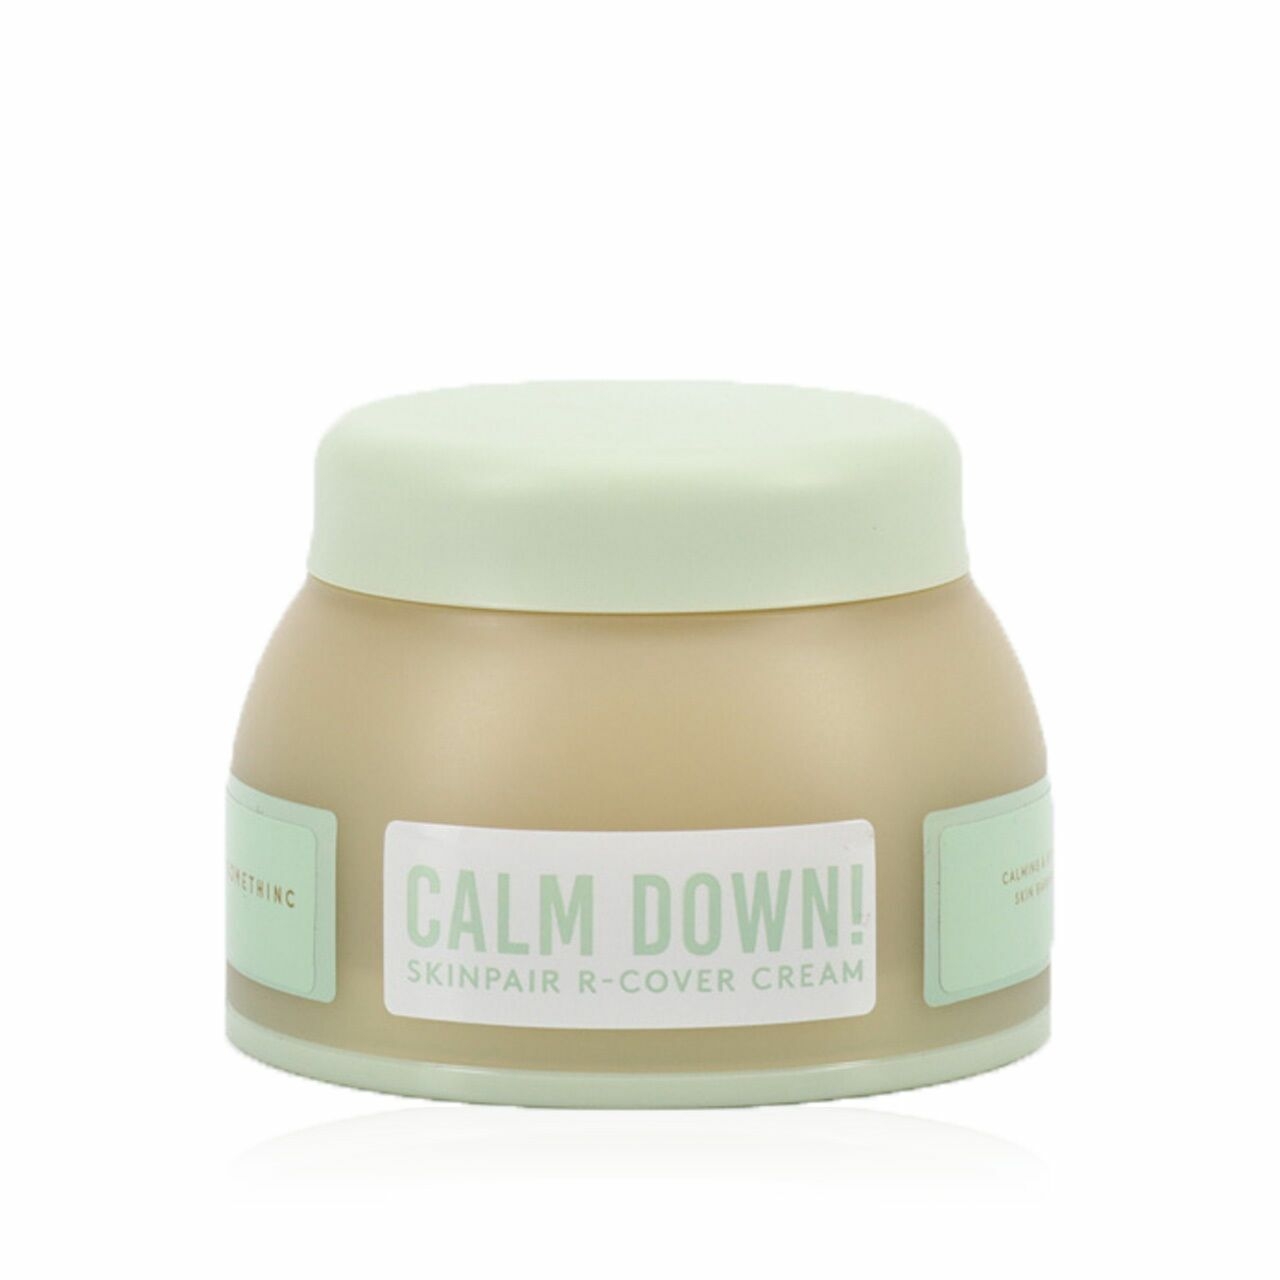 Somethinc Calm Down! Skinpair R-Cover Cream Calming & Repair Skin Barrier